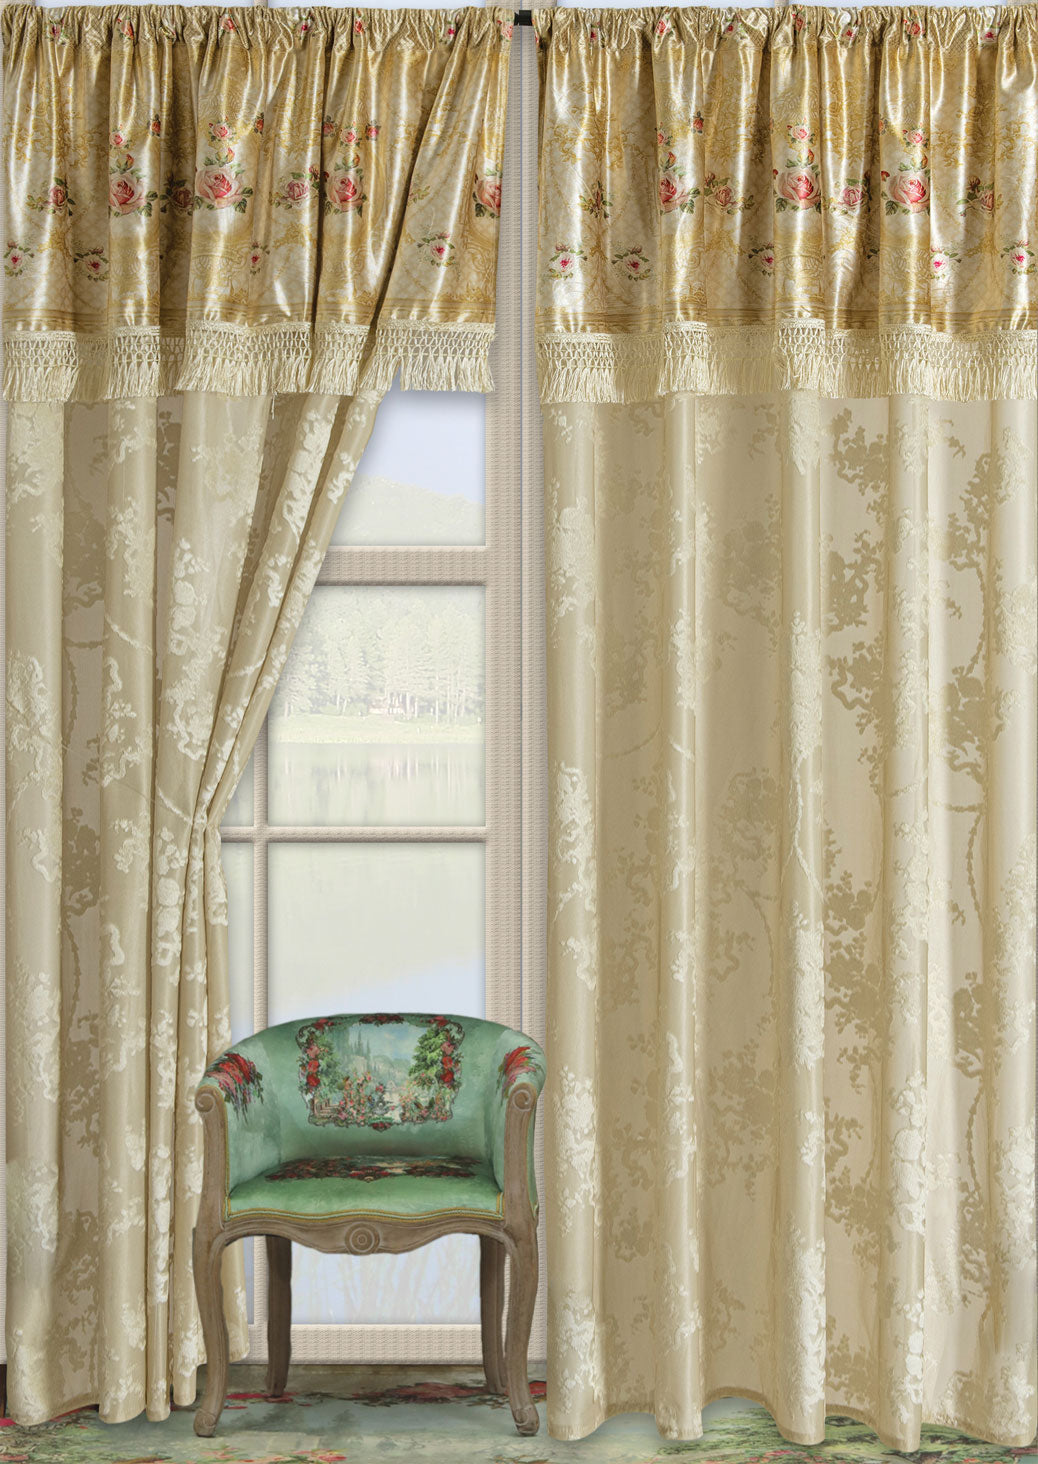 Bonita designed curtain